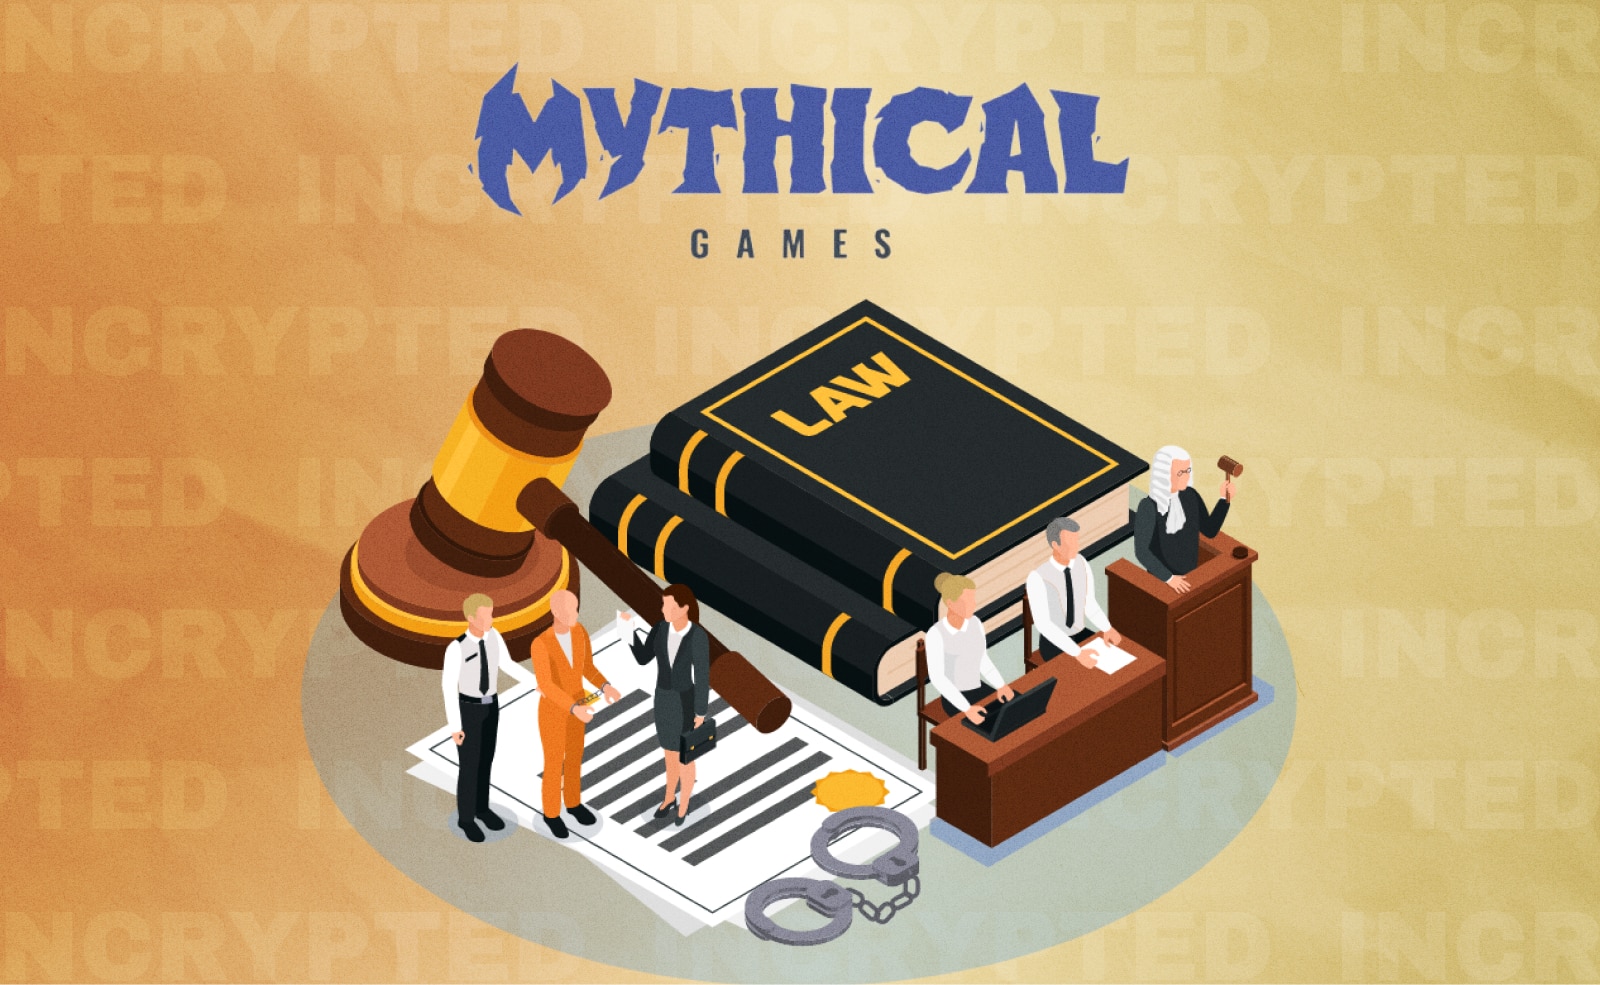 Mythical Games будет судиться с трио своих бывших руководителей Они покинули компанию в ноябре этого года Фирма заявляет, что они украли наработки для привлечения инвестиций в собственный стартап